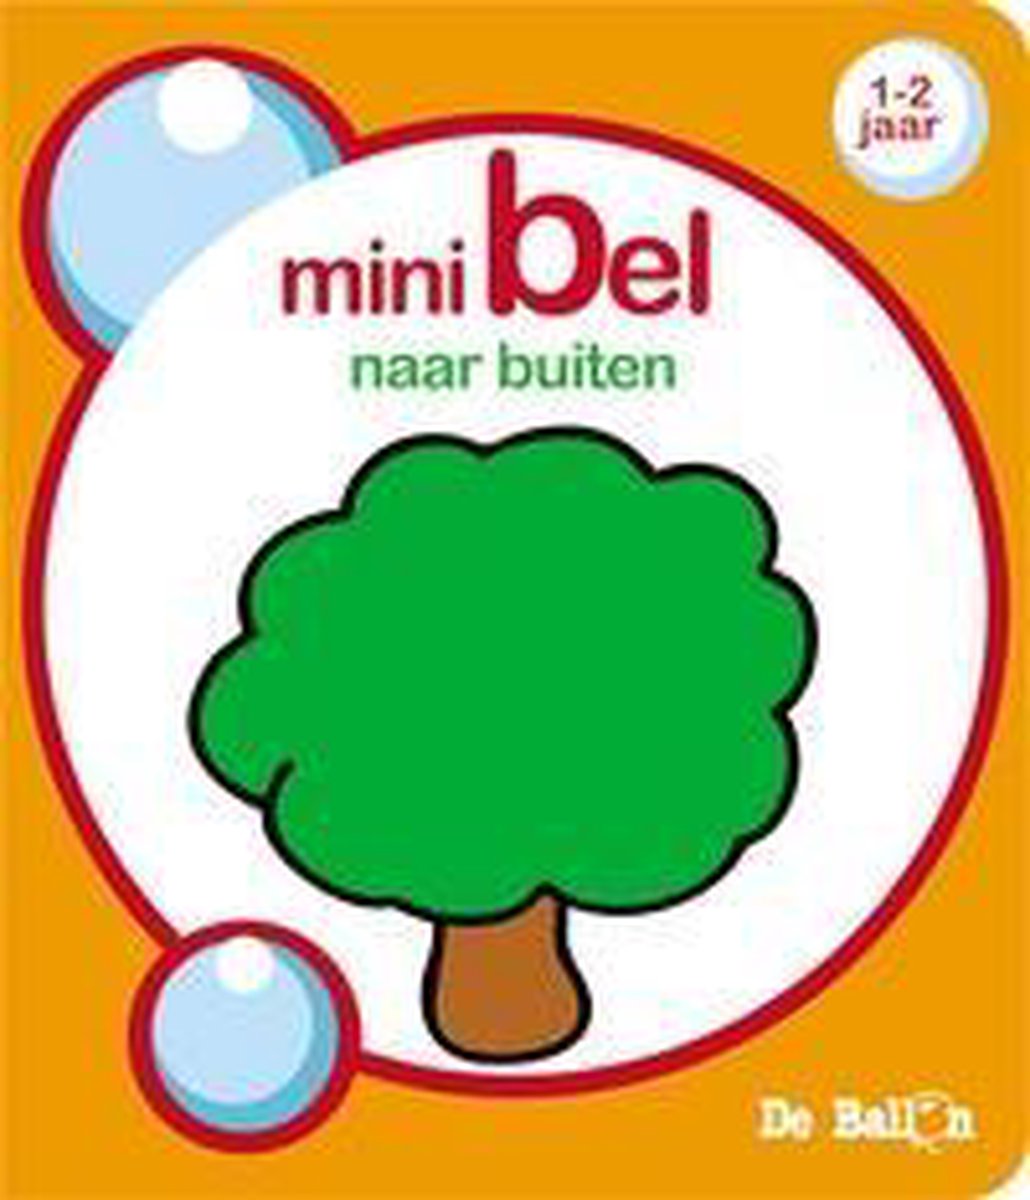 Ballon divers nl / De tuin / Minibel / 686